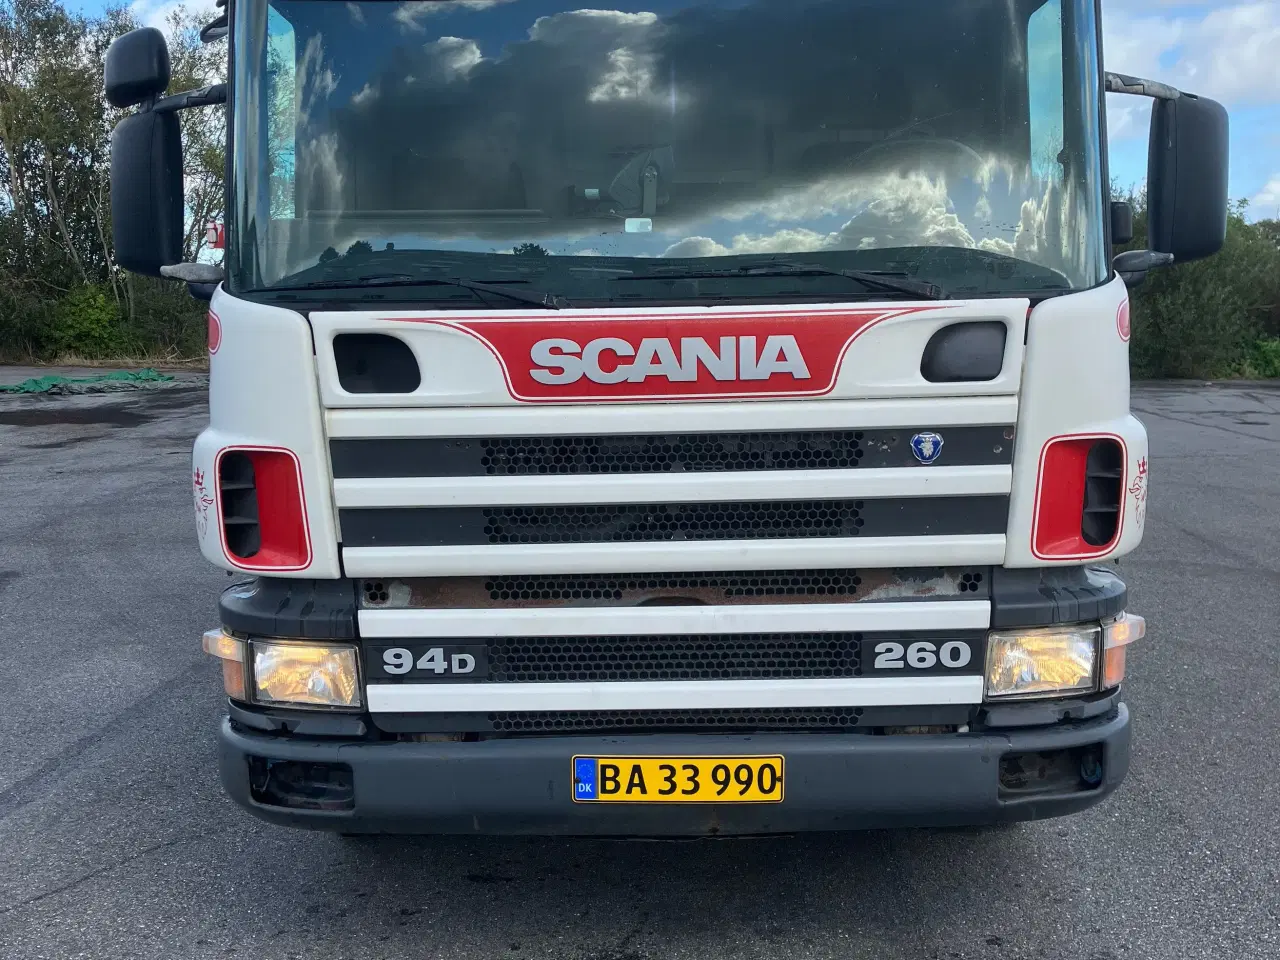 Billede 2 - Scania 94d 260